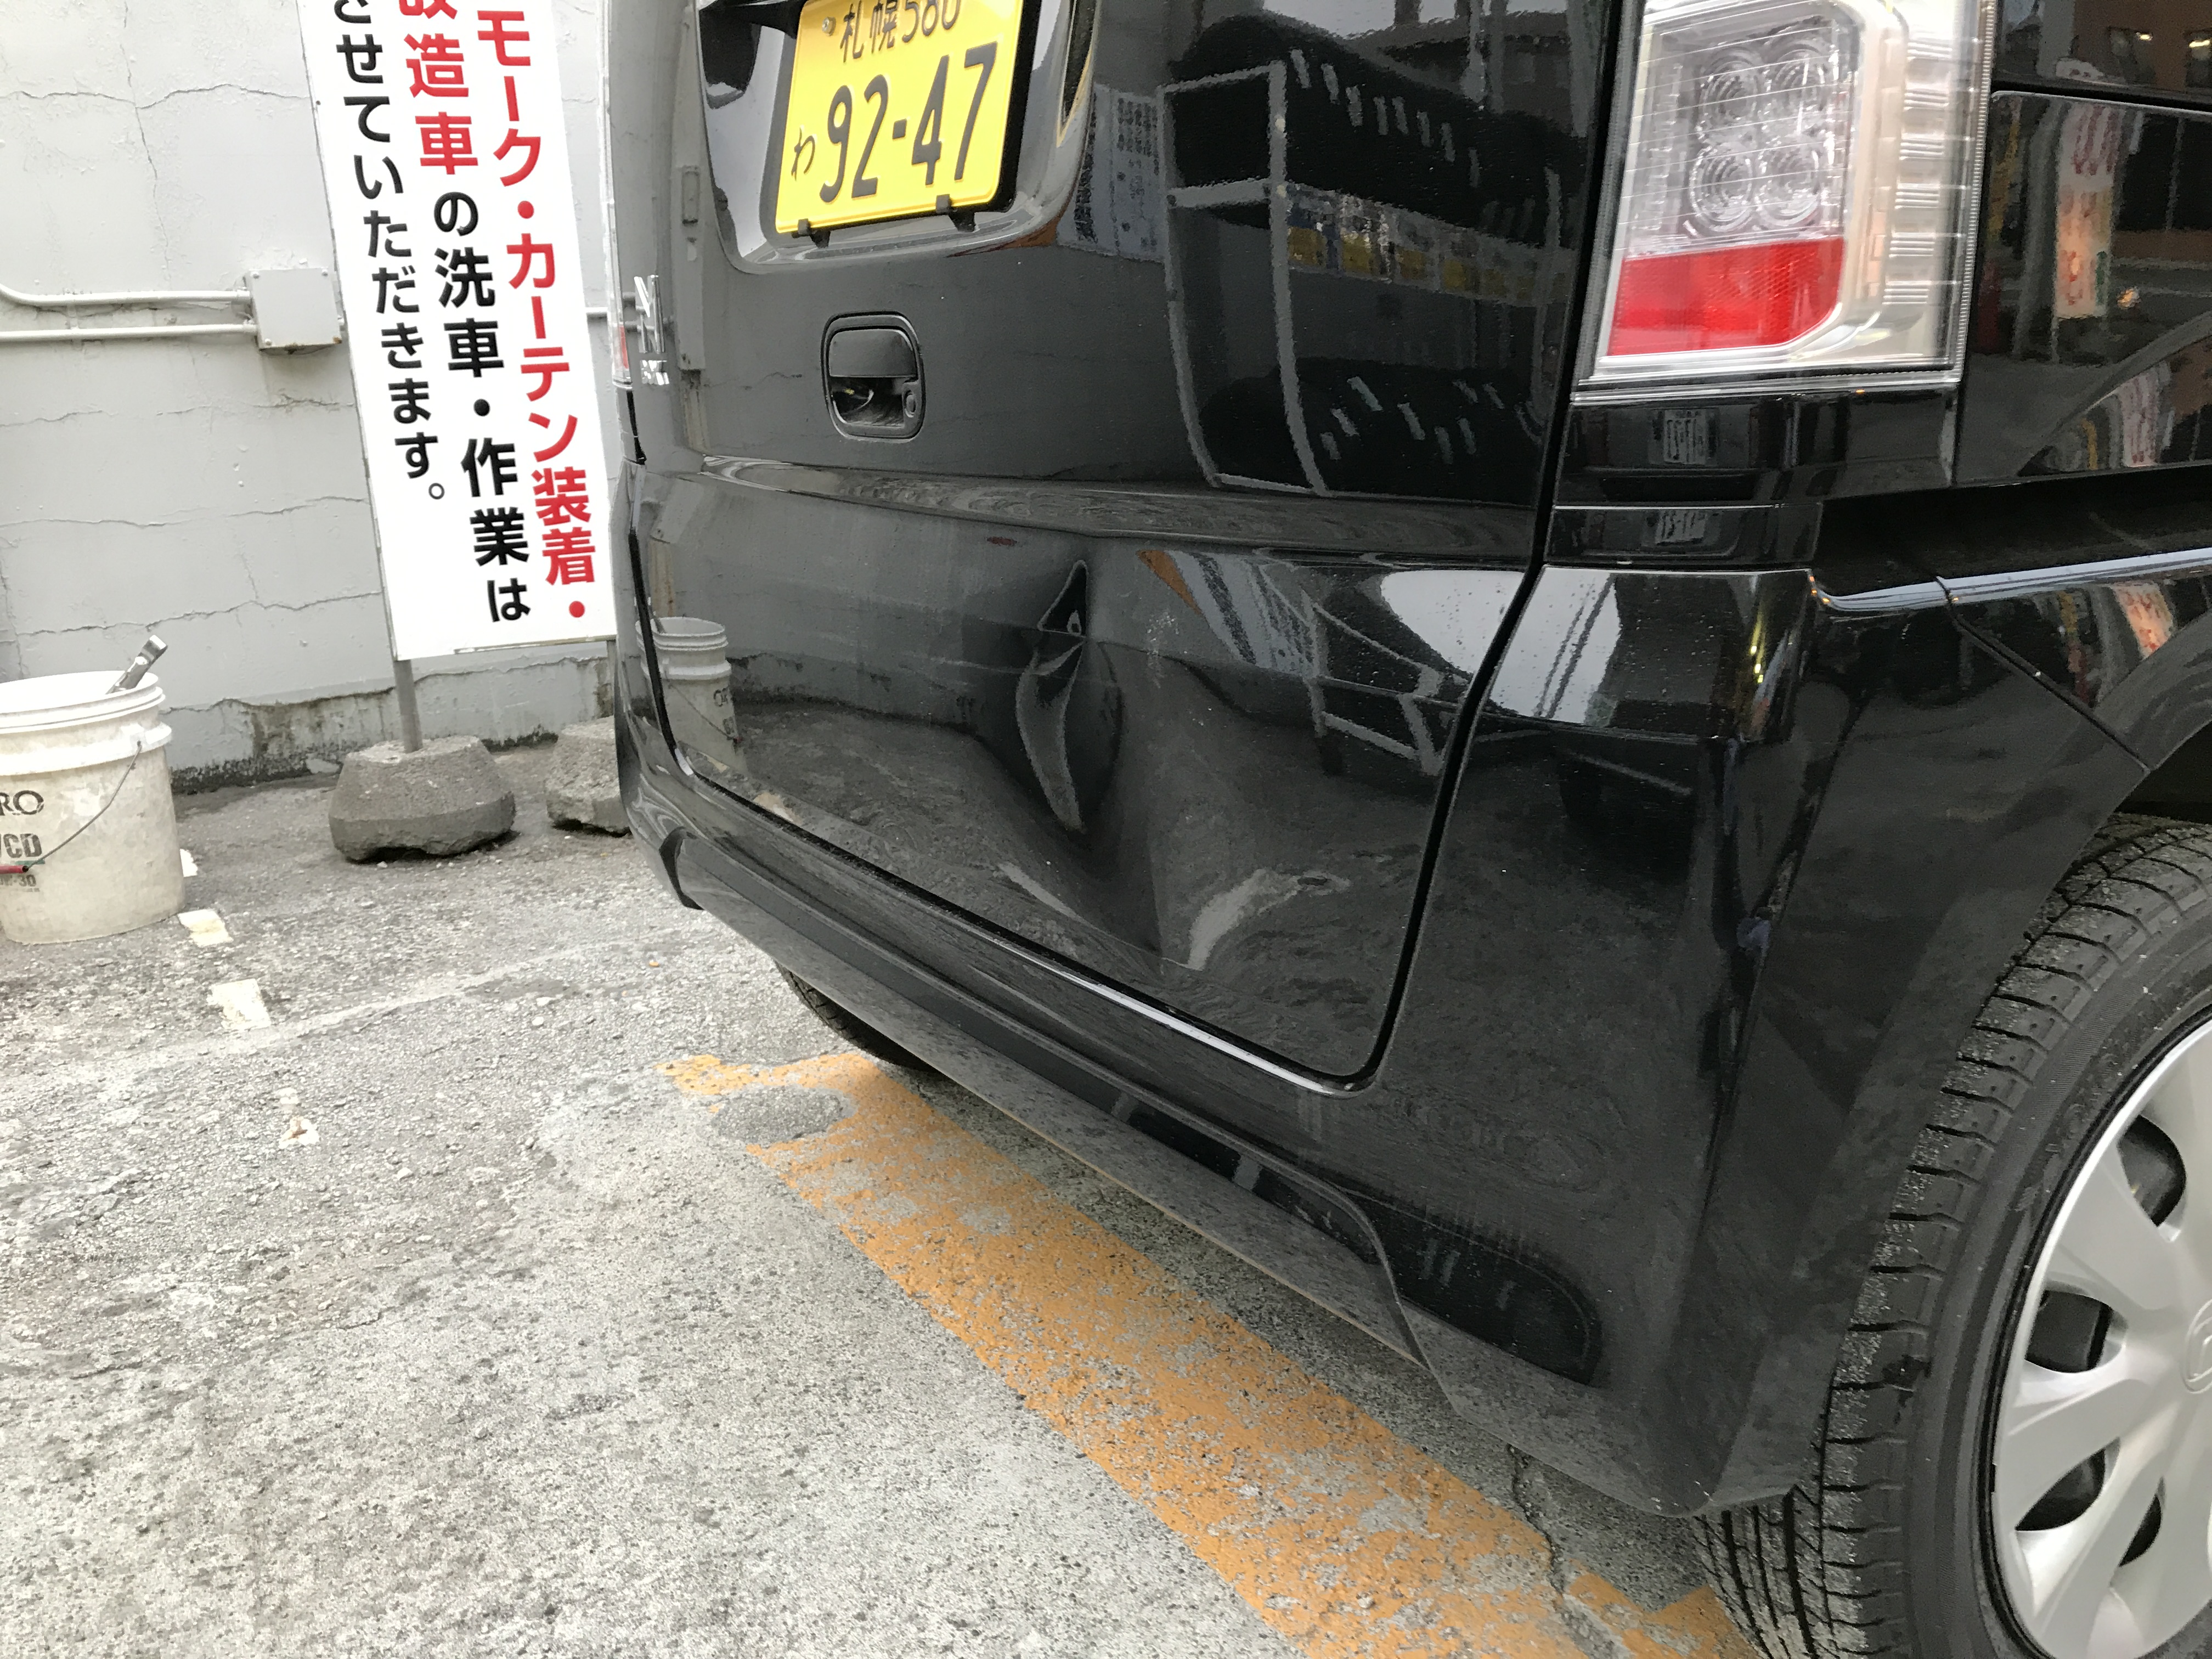 アイックス鈑金修理専門店のブログ 札幌市 江別市の車キズへこみ修理